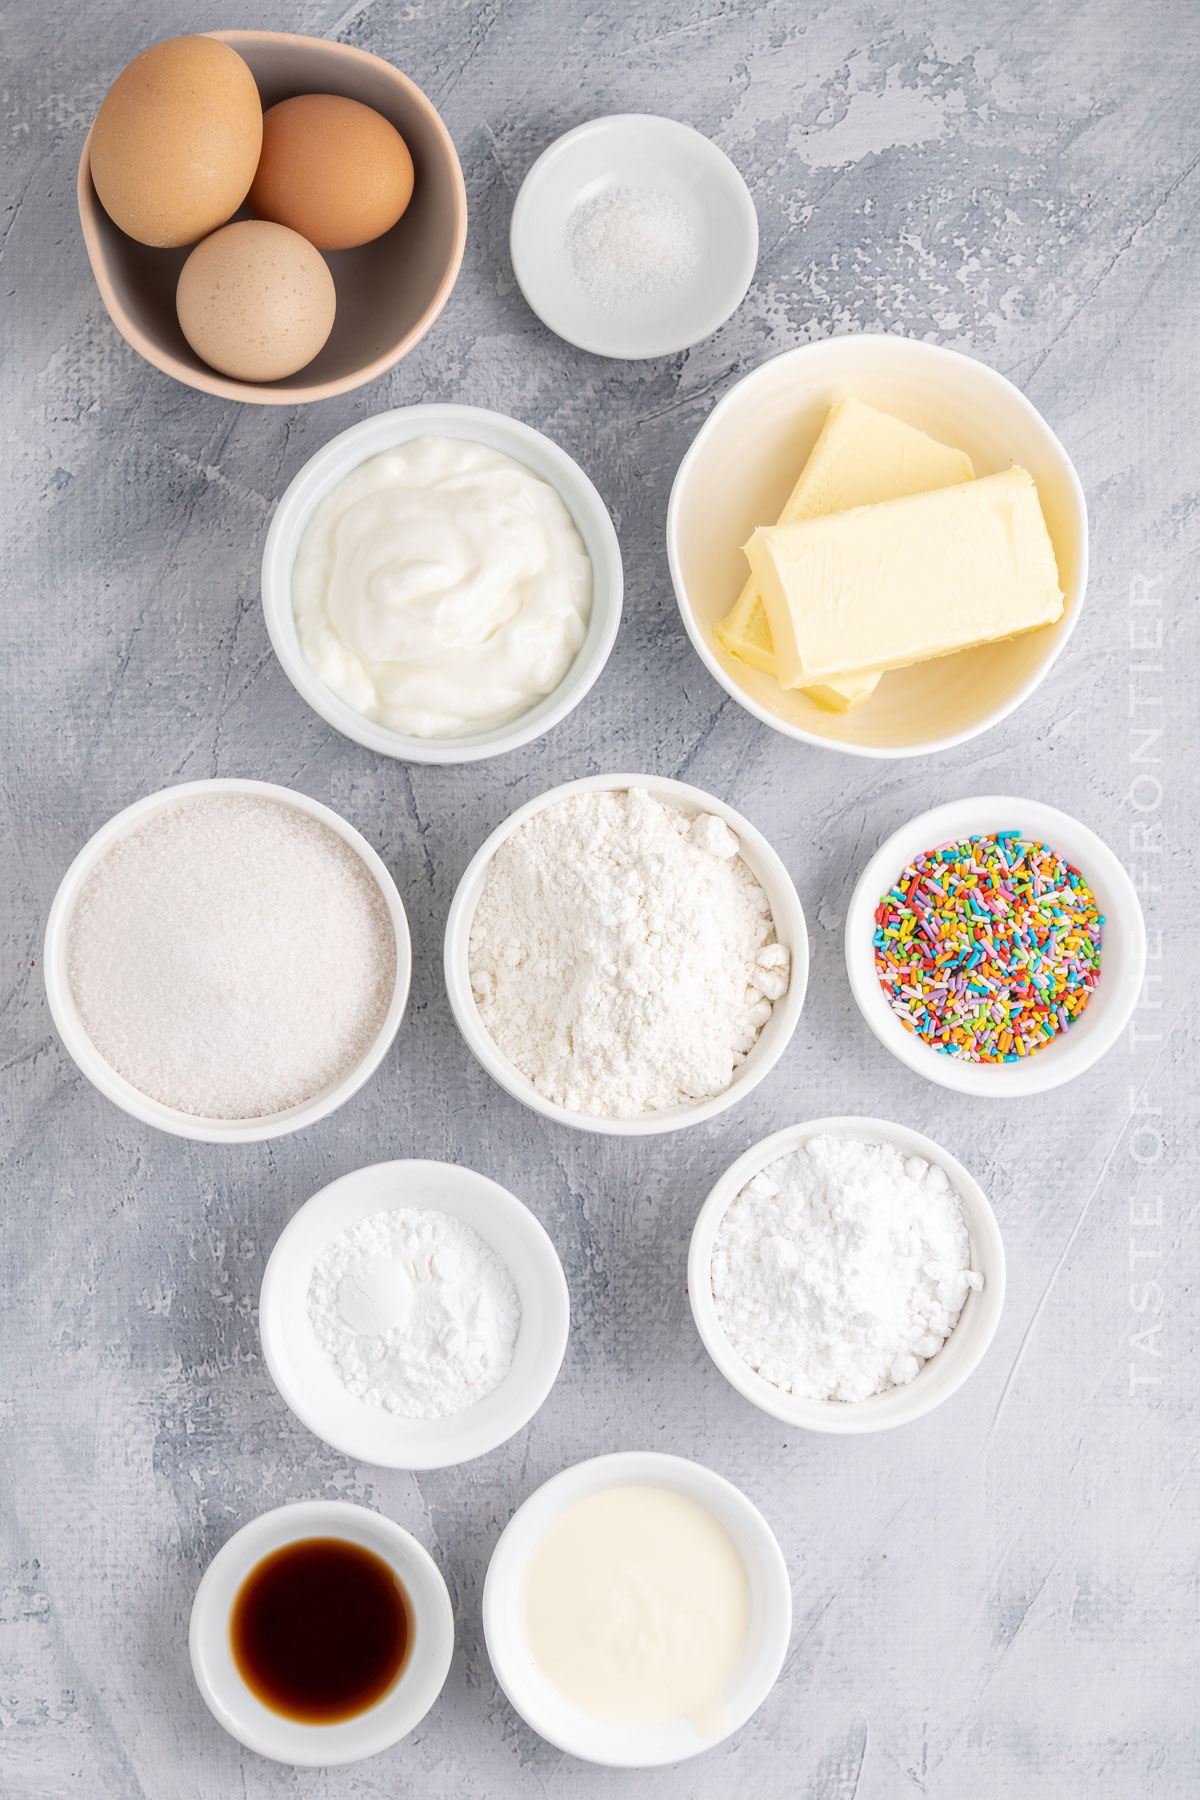 Ingredients for Sprinkle Cupcakes